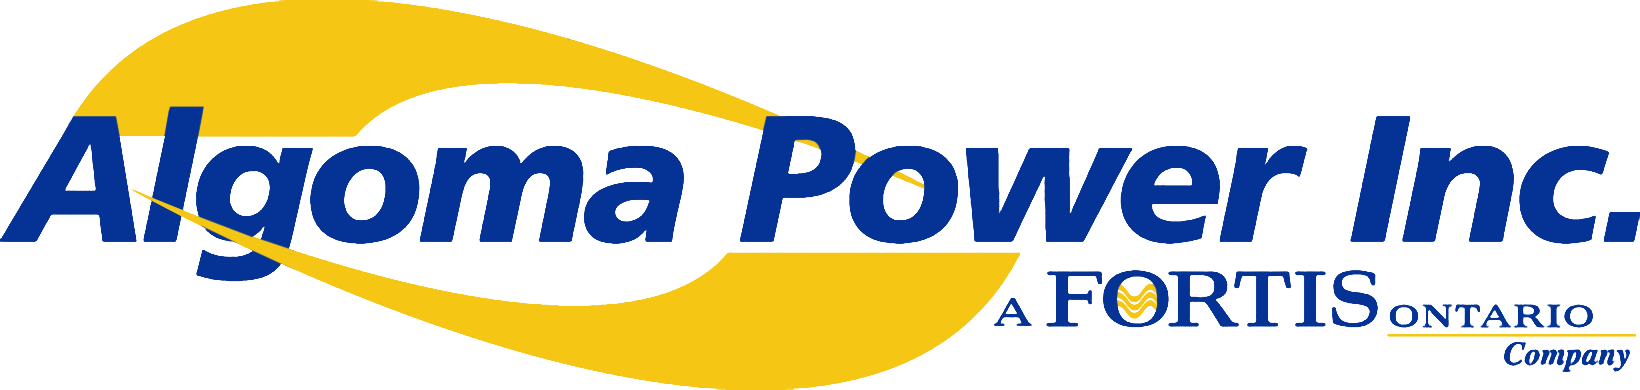 Algoma Power Inc. logo